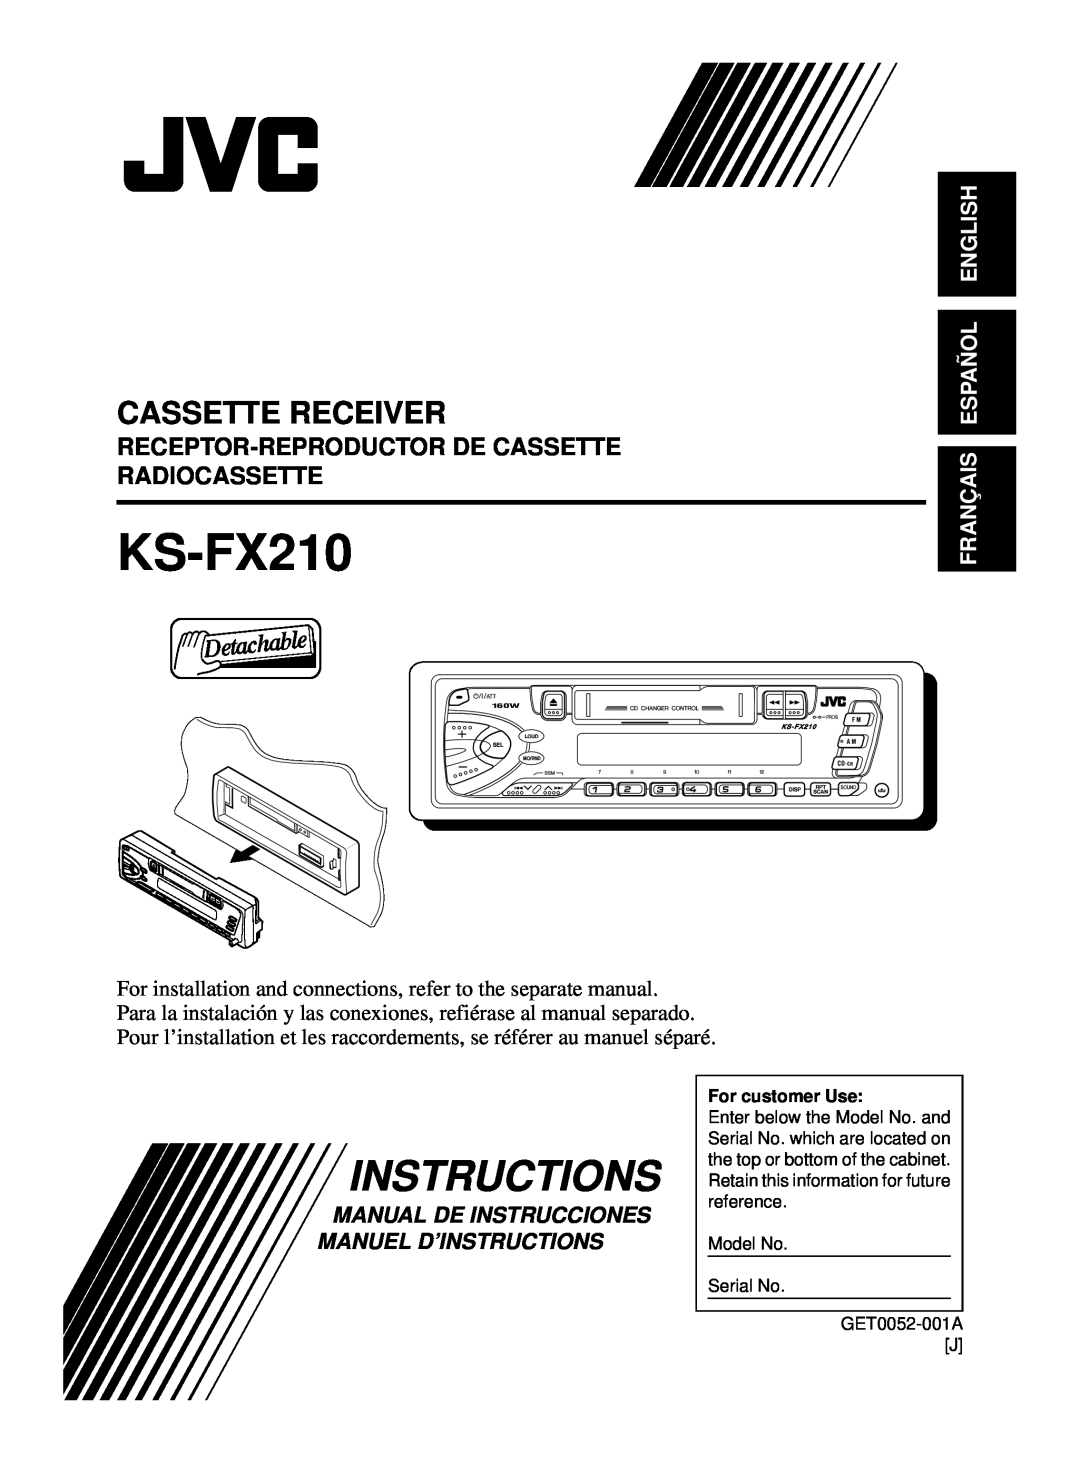 JVC KS-FX210 manual Cassette Receiver, Receptor-Reproductorde Cassette Radiocassette, Français Español English 